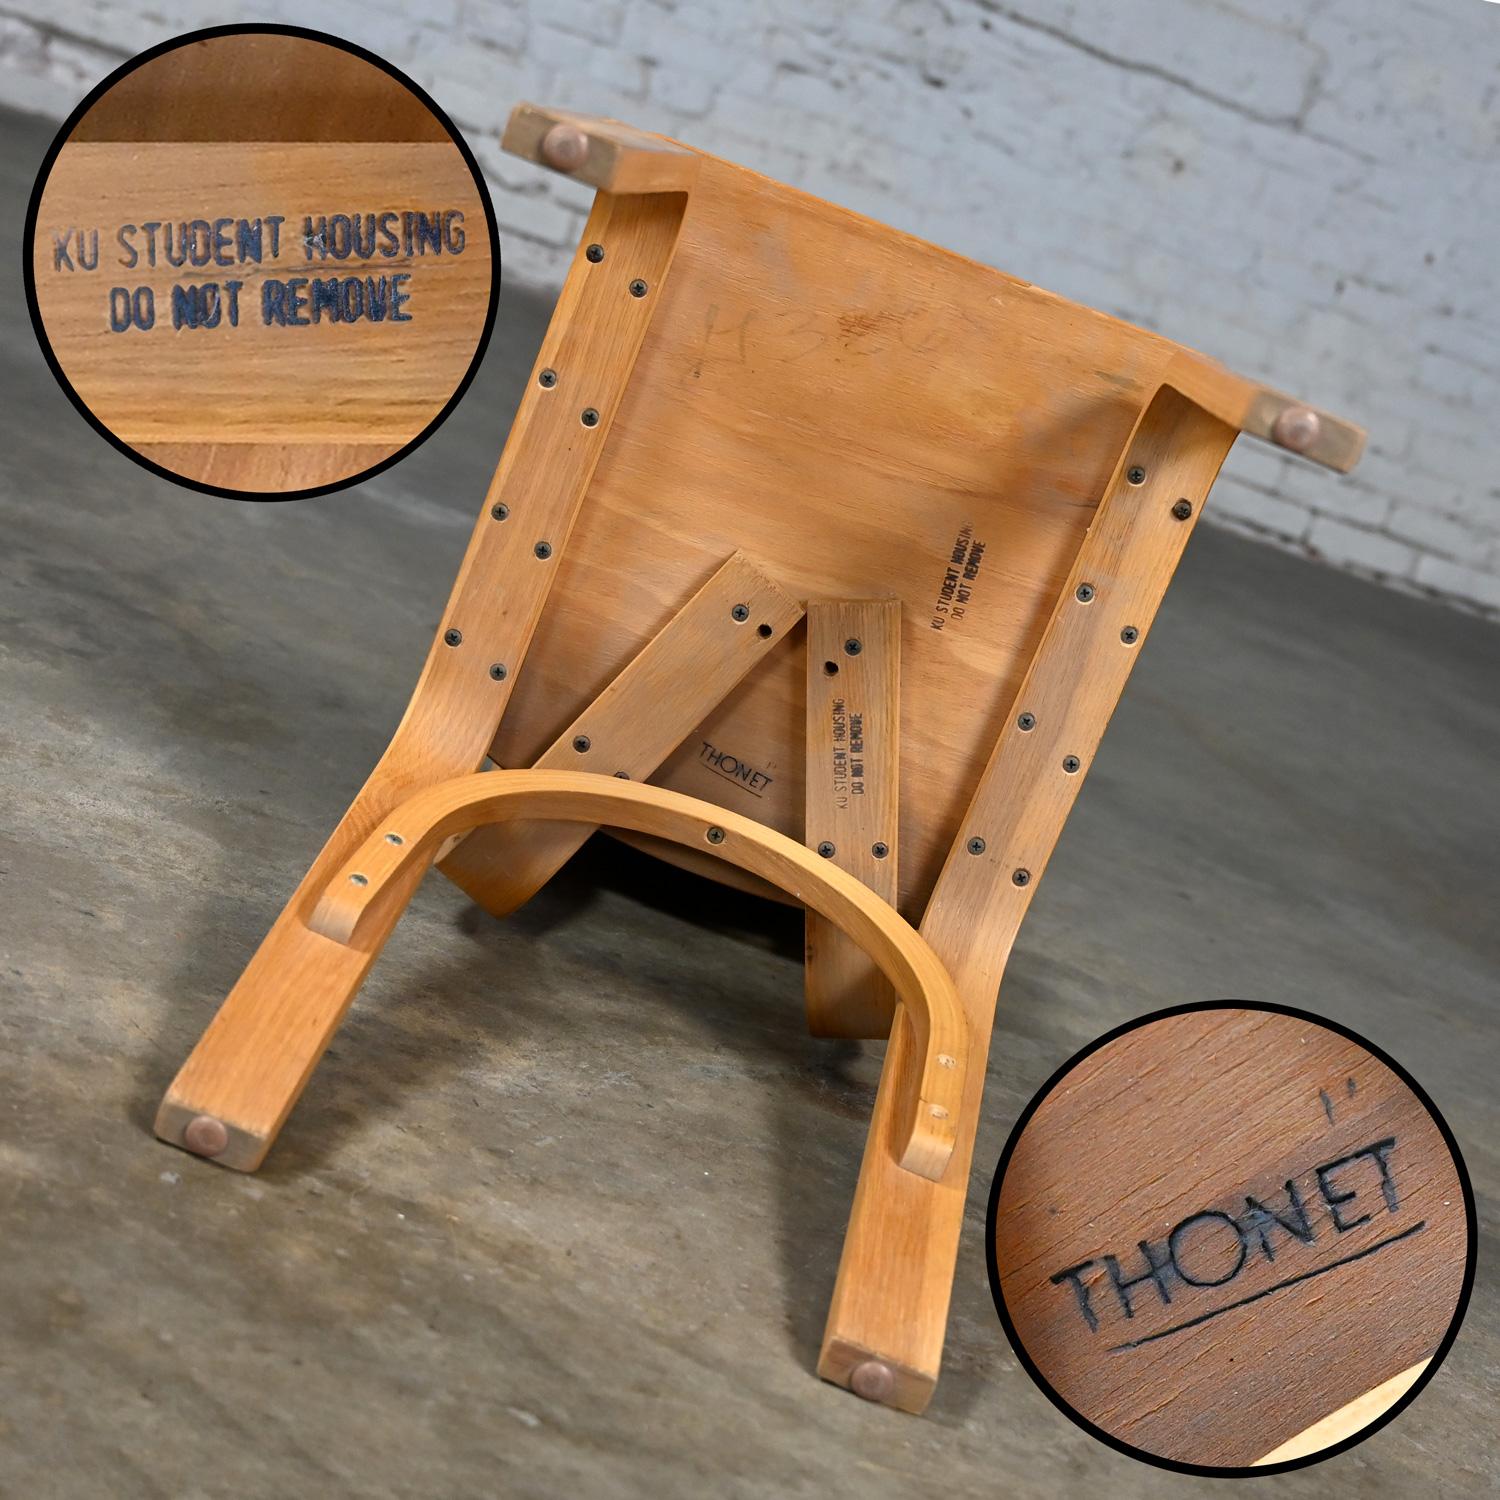 Chêne Ensemble de 6 chaises de salle à manger MCM Thonet #1216 en contreplaqué de chêne courbé, assise en selle, arc simple en vente